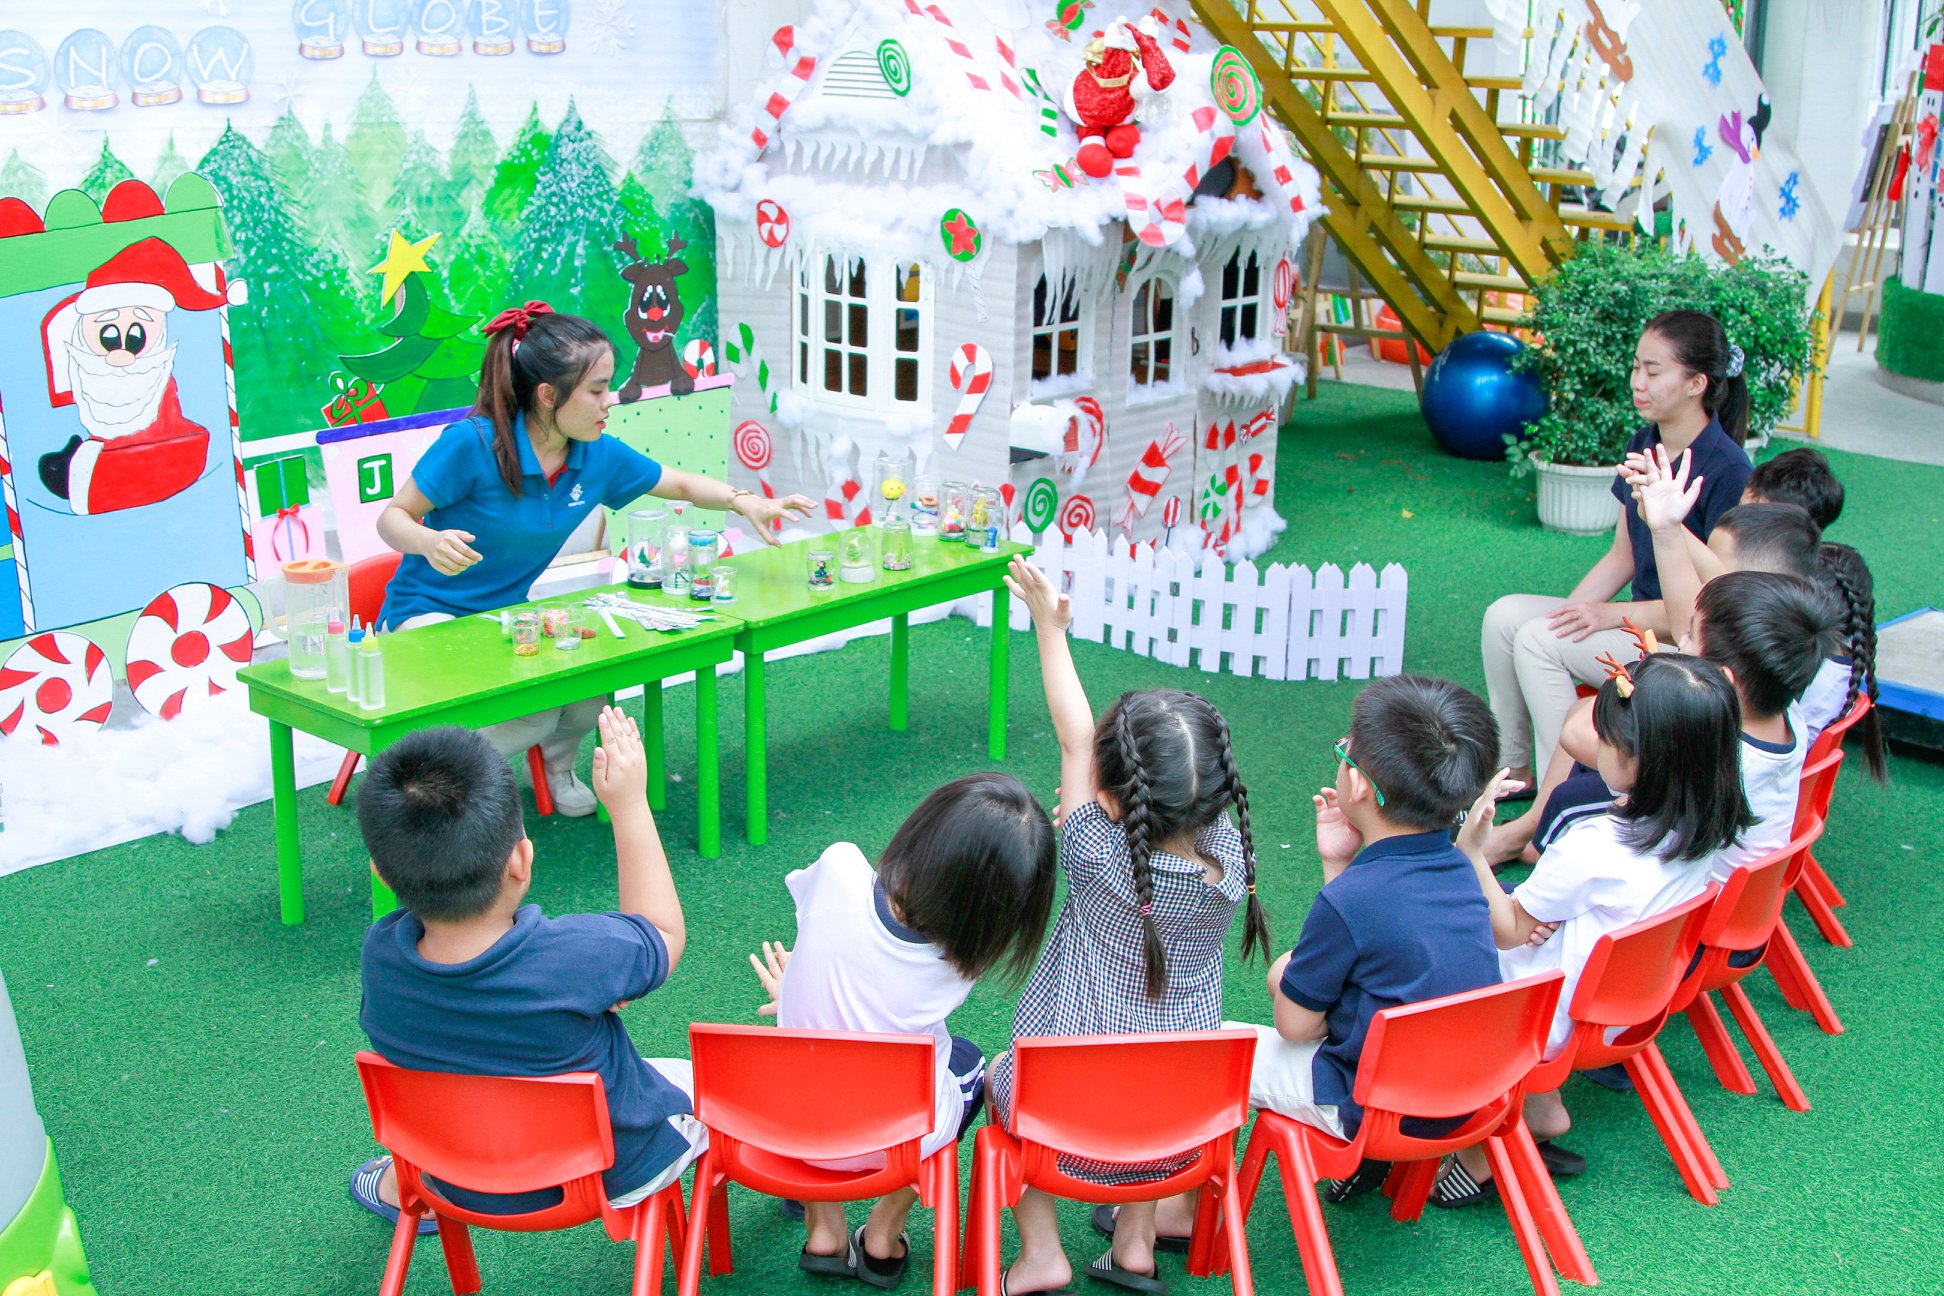 Kindy City International Preschool quả cầu tuyết diệu kỳ đón Noel 2021